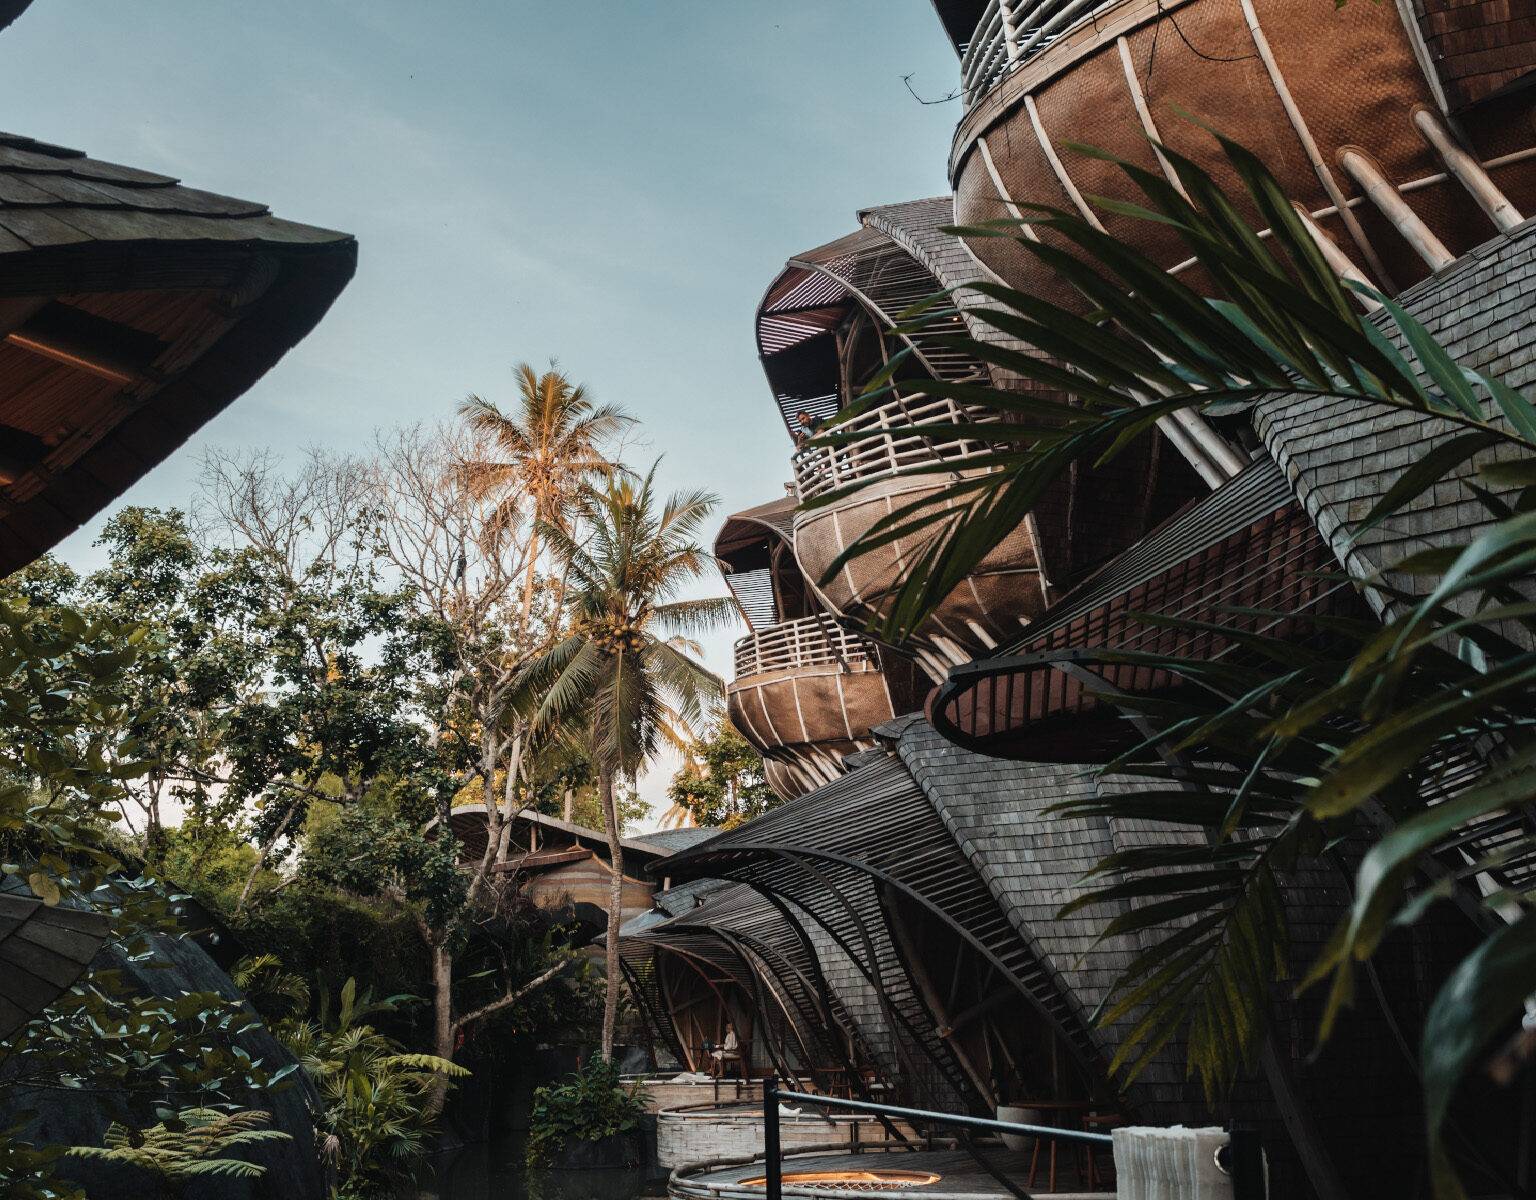 Die Hotelanlage des Ulaman Bali, die aus viele Bungalows besteht. Diese sind zweistöckig und Vogelnestartig gebaut. Im Hintergrund viele Palmen.